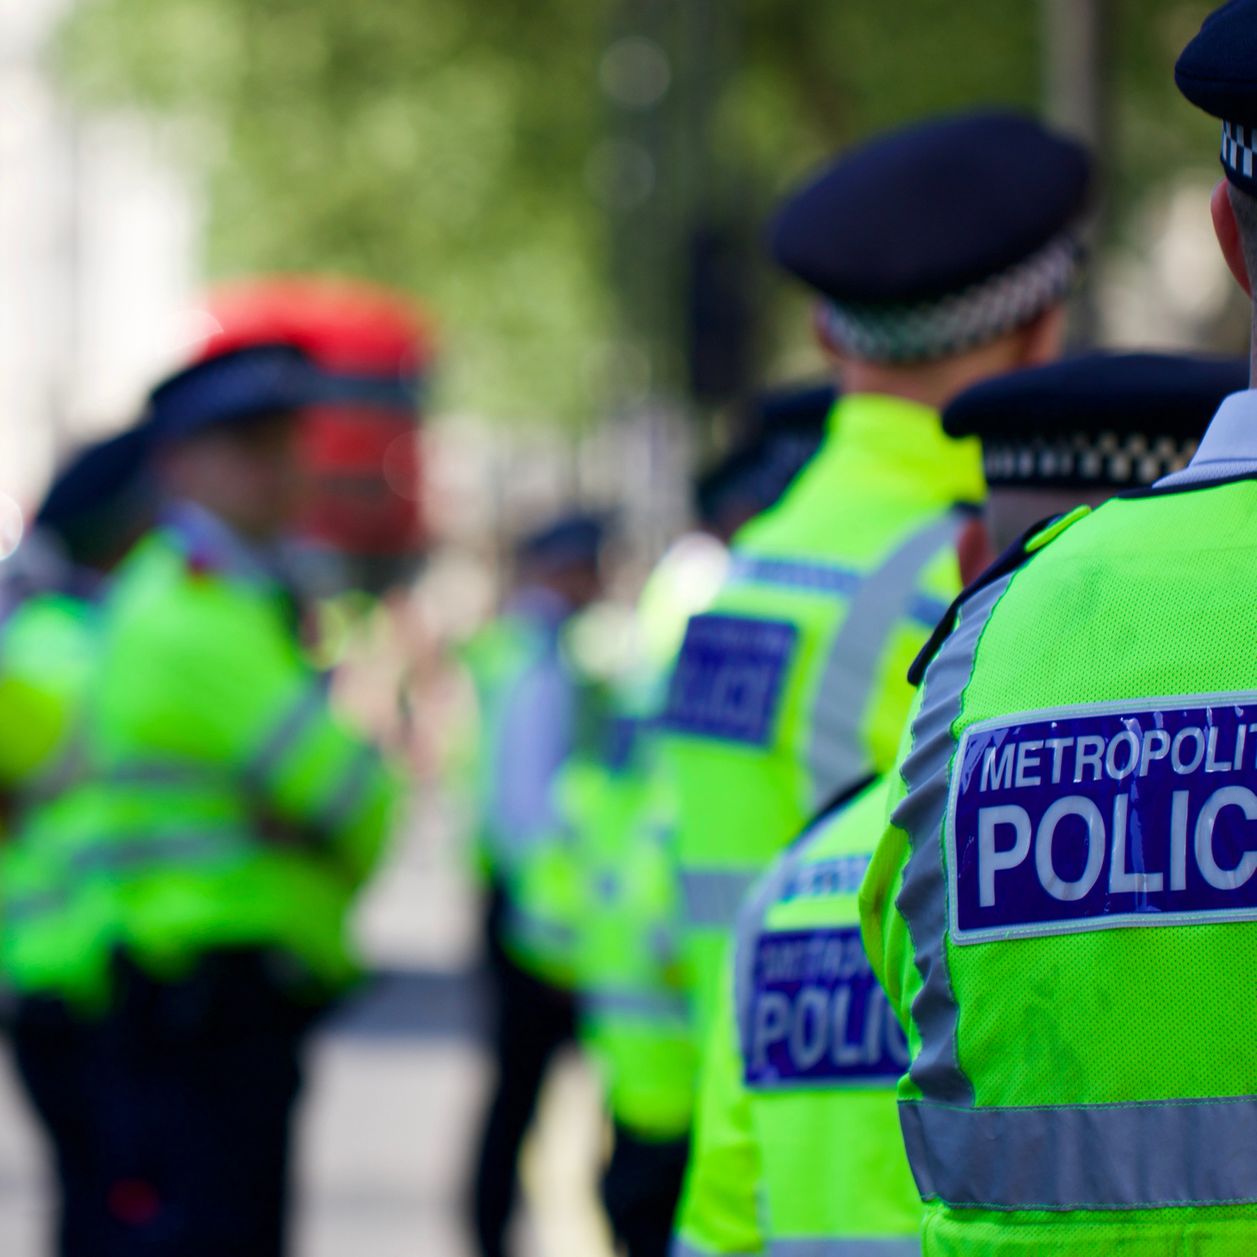 Londres : Un homme abattu après avoir poignardé plusieurs personnes